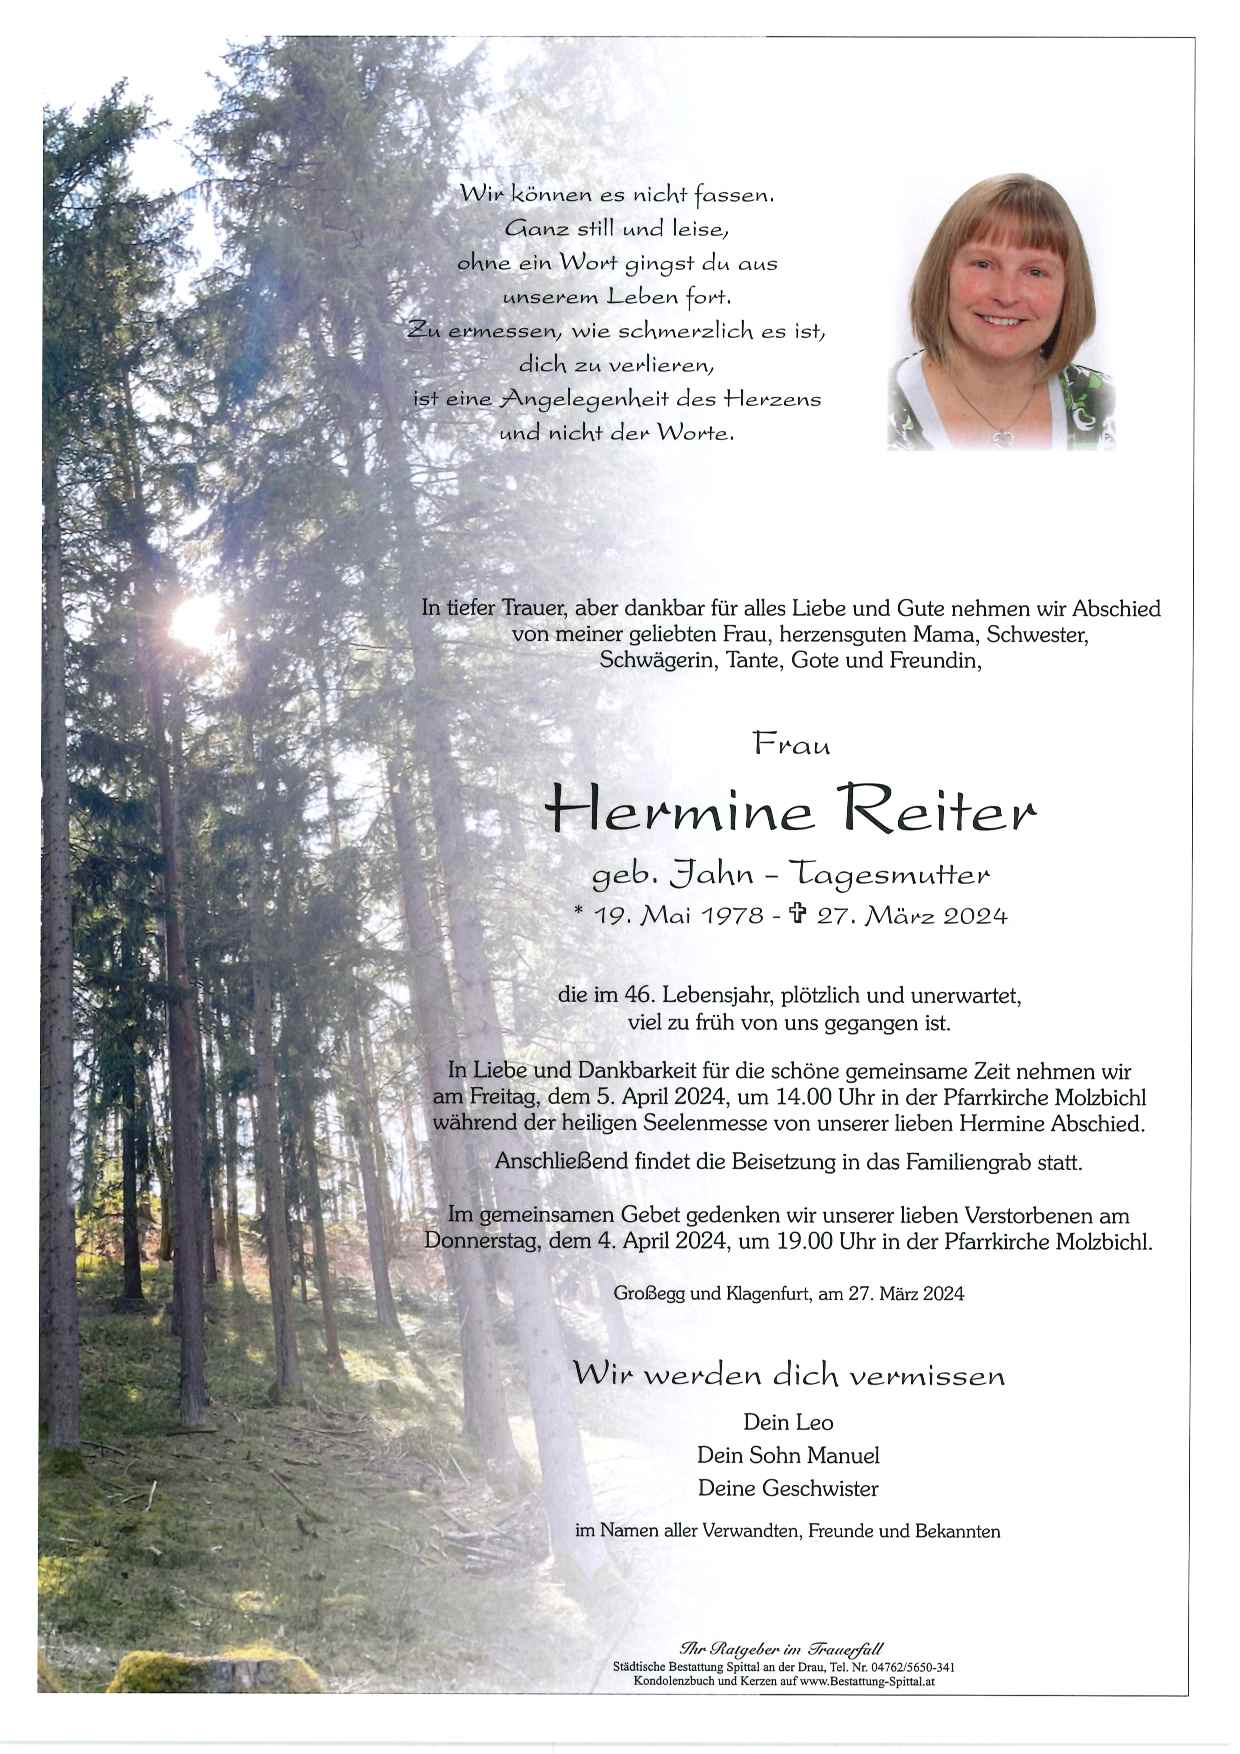 Hermine Reiter